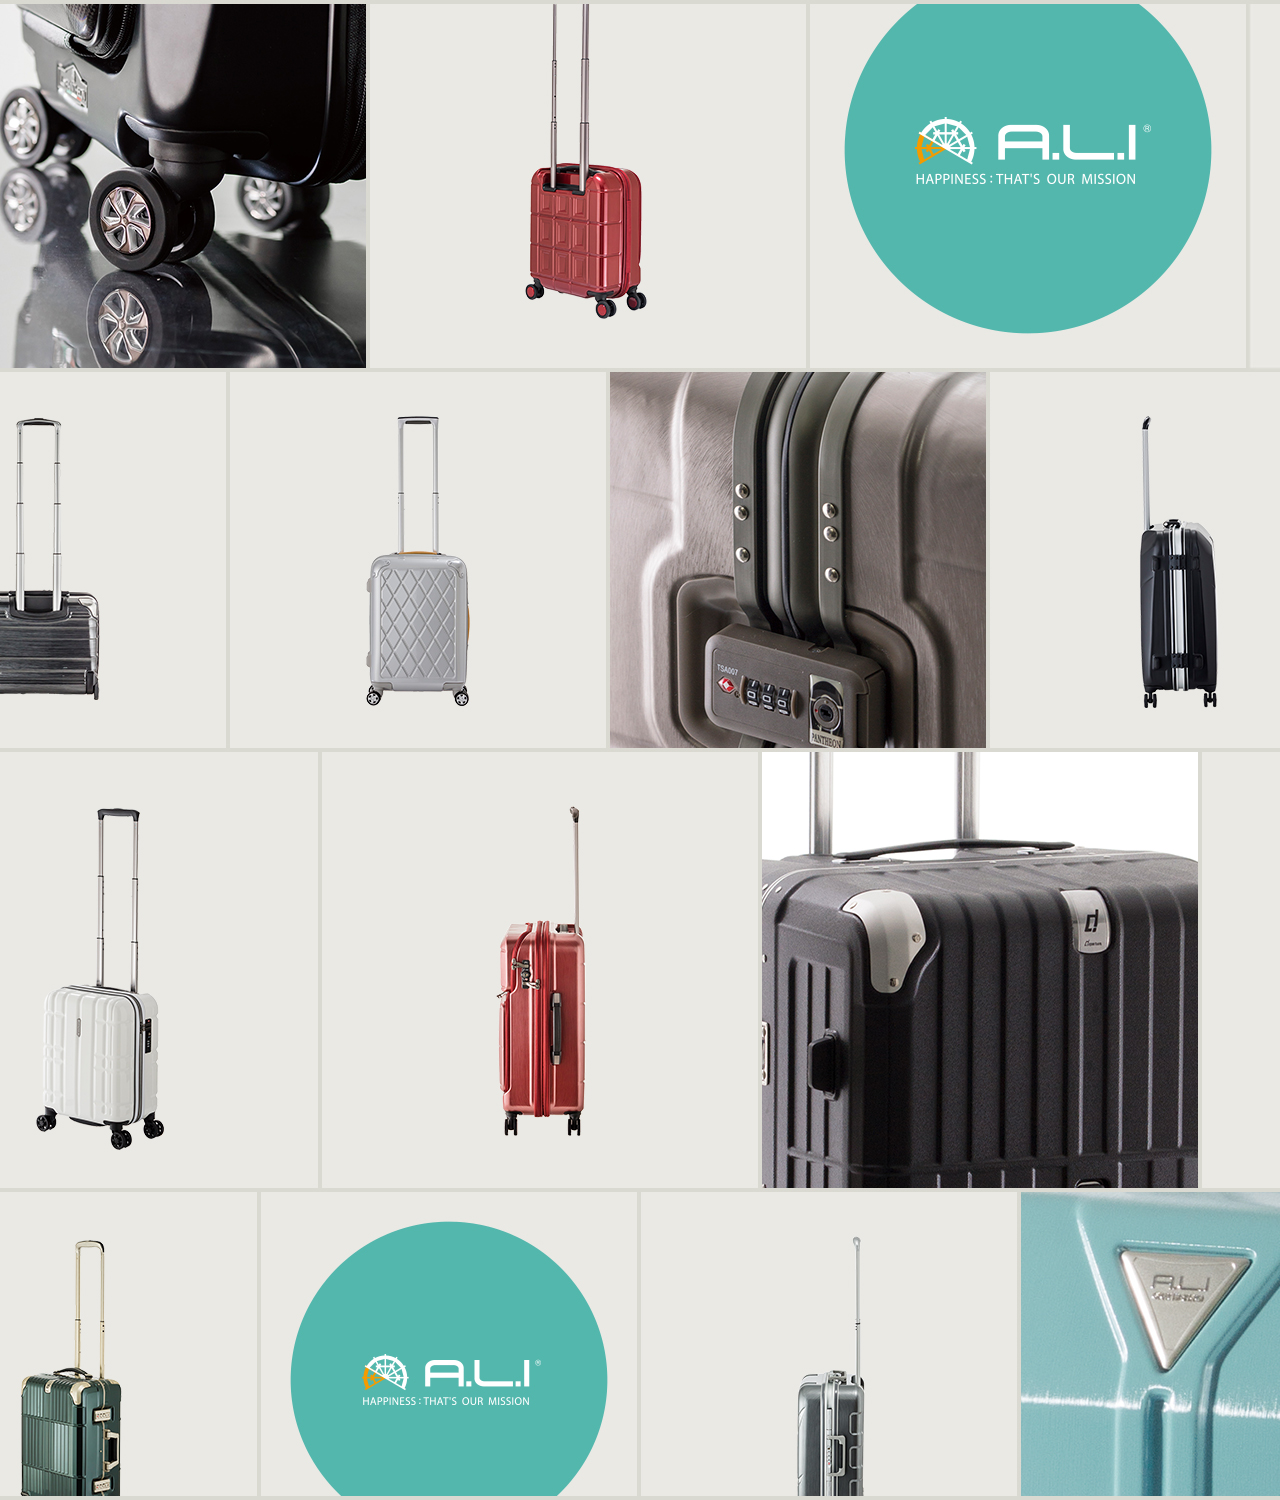 アジア・ラゲージ 公式サイト | Asia Luggage Inc.